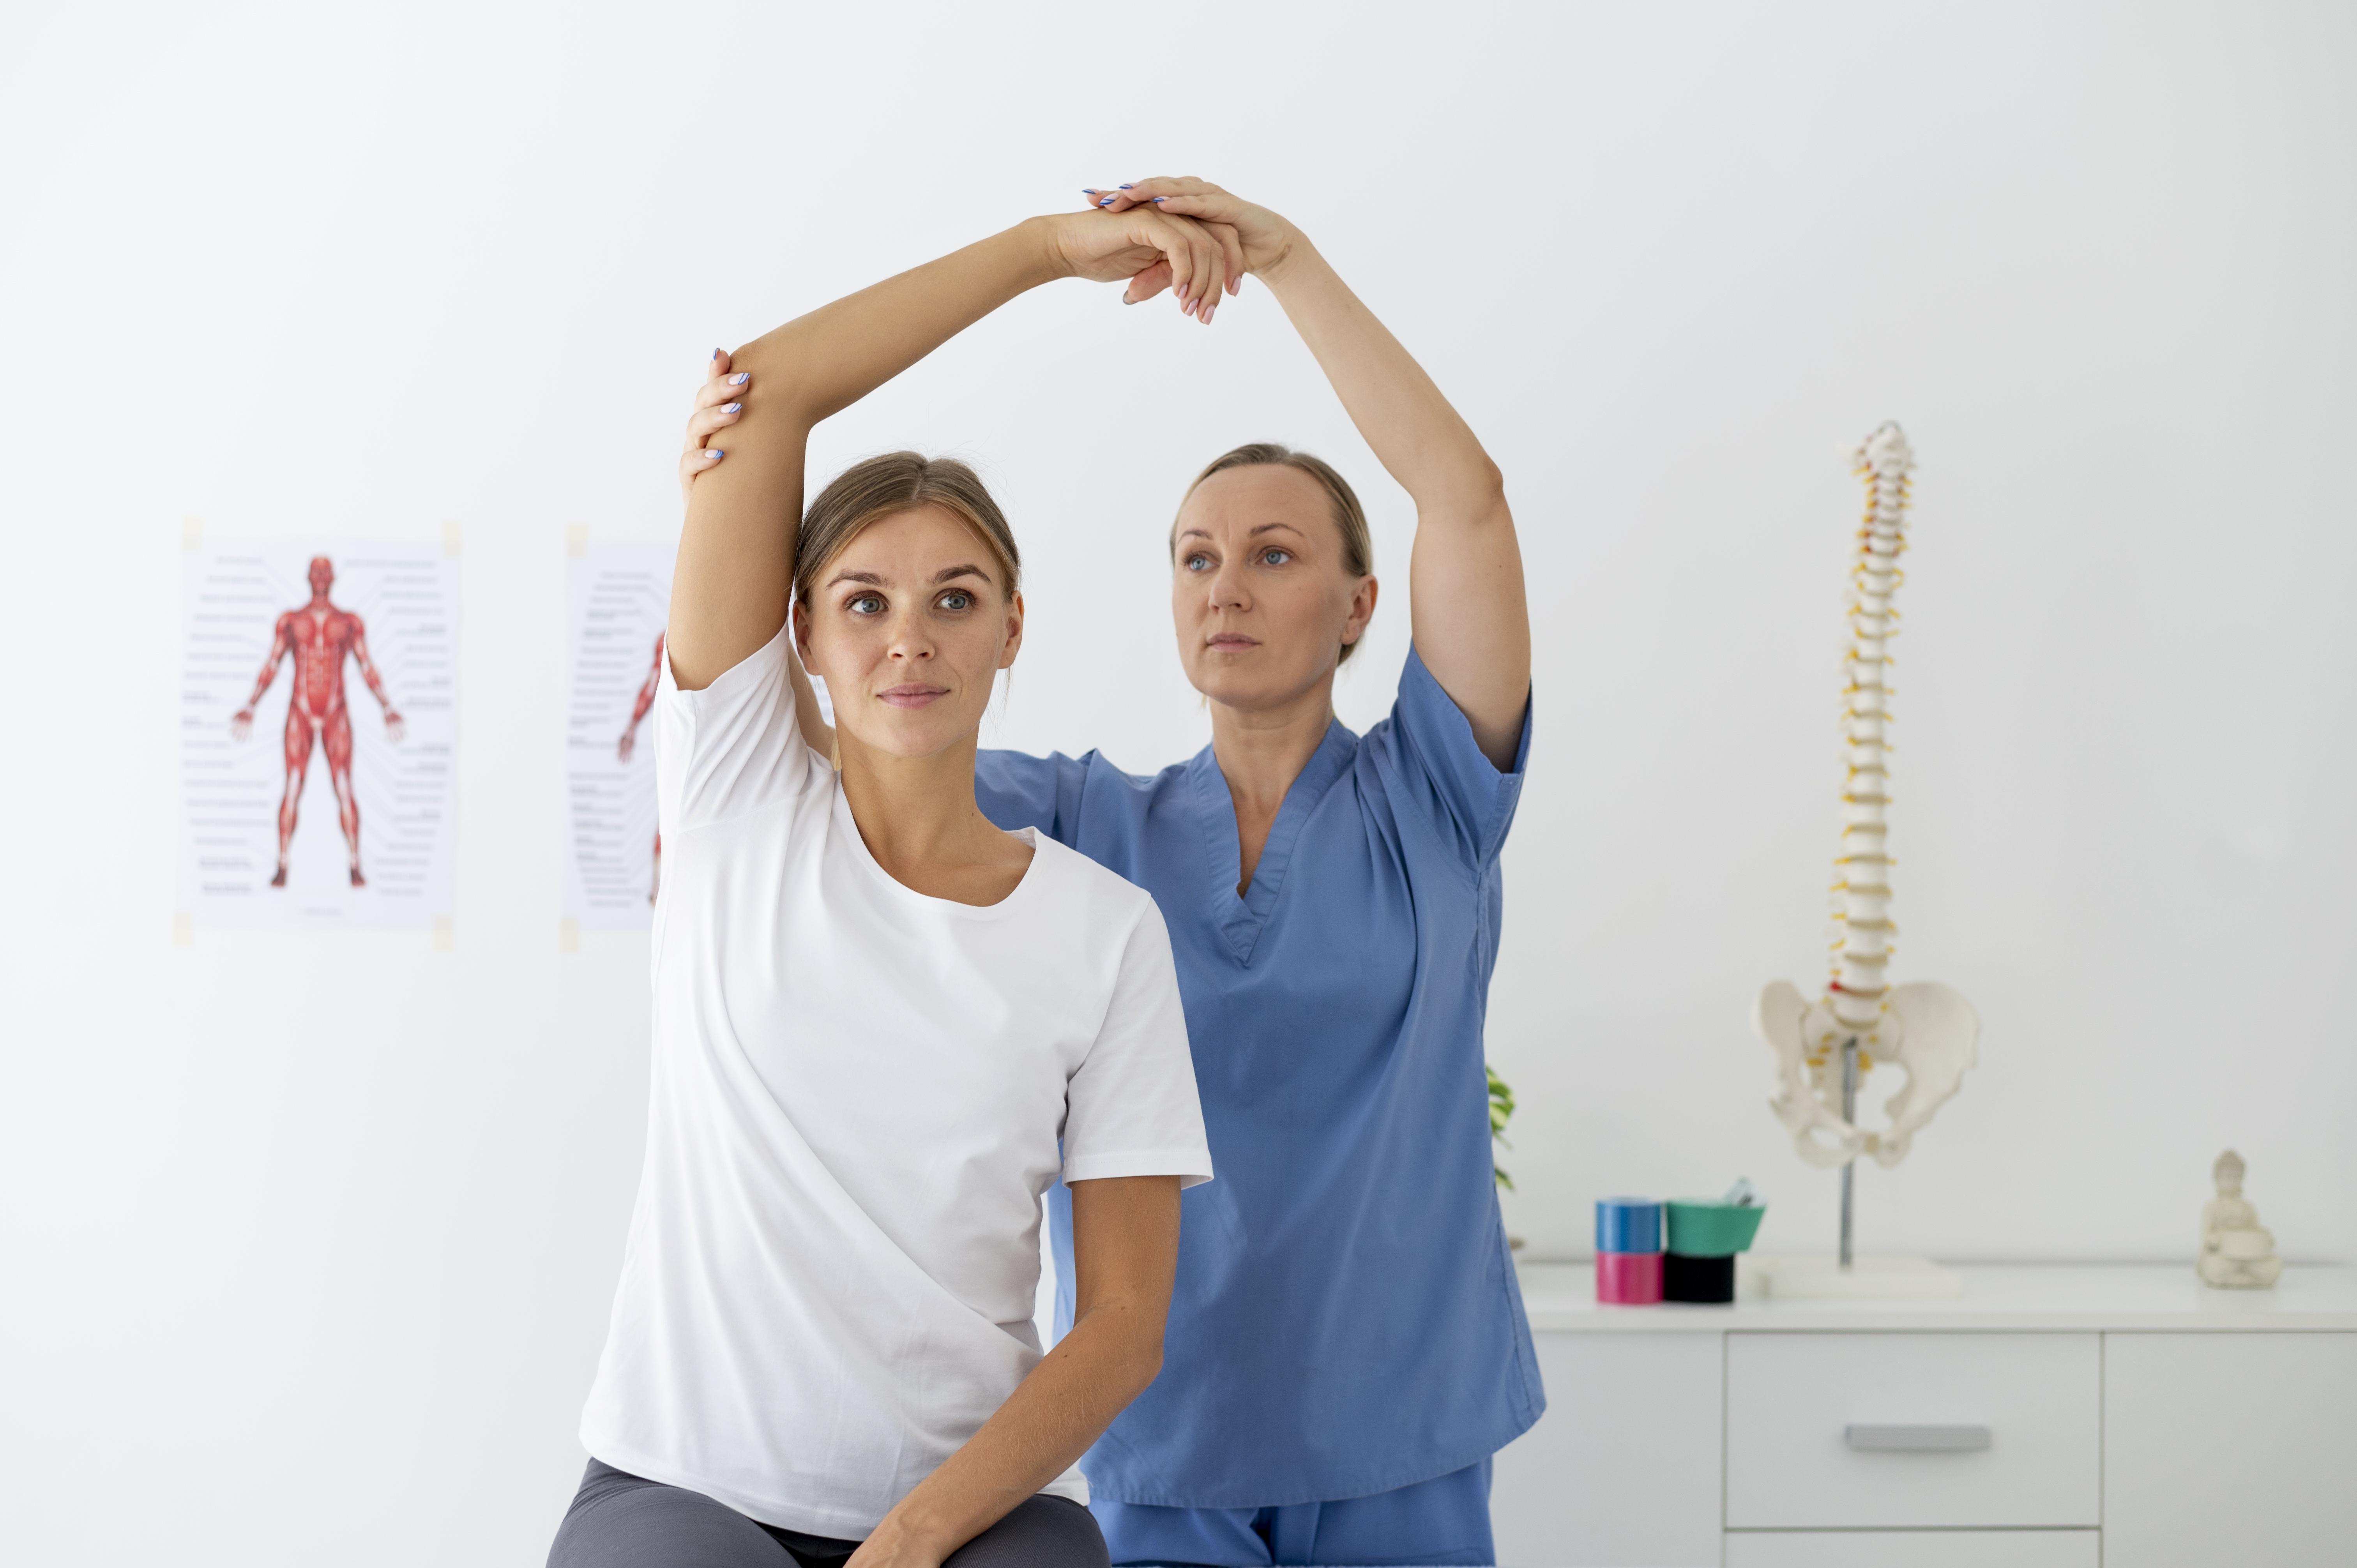 fisioterapeuta ajudando uma paciente do sexo feminino em sua clinica